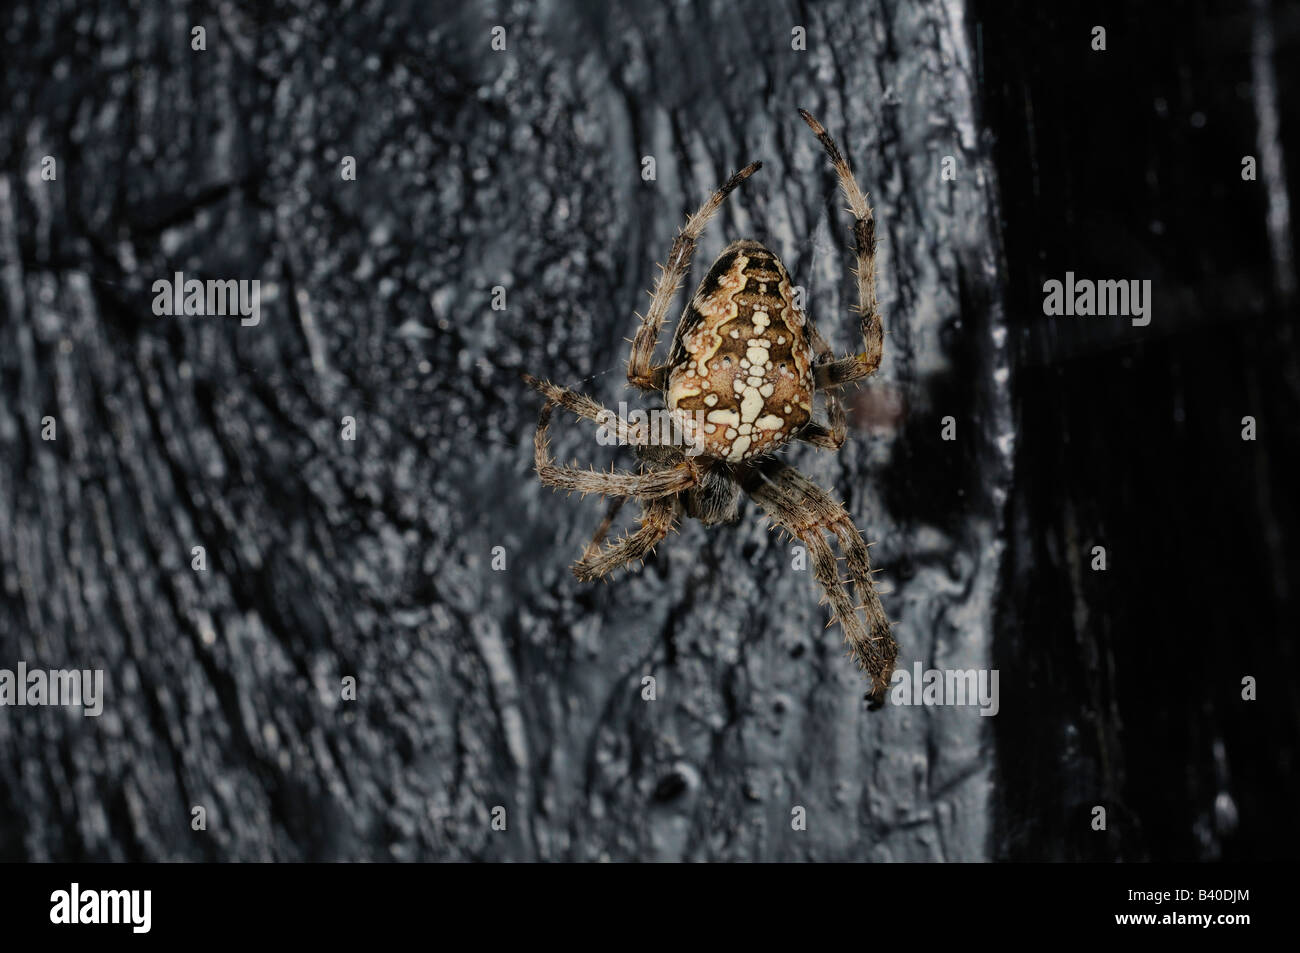 Il giardino europeo spider Araneus diadematus o diadema spider chiamato anche la croce spider Foto Stock